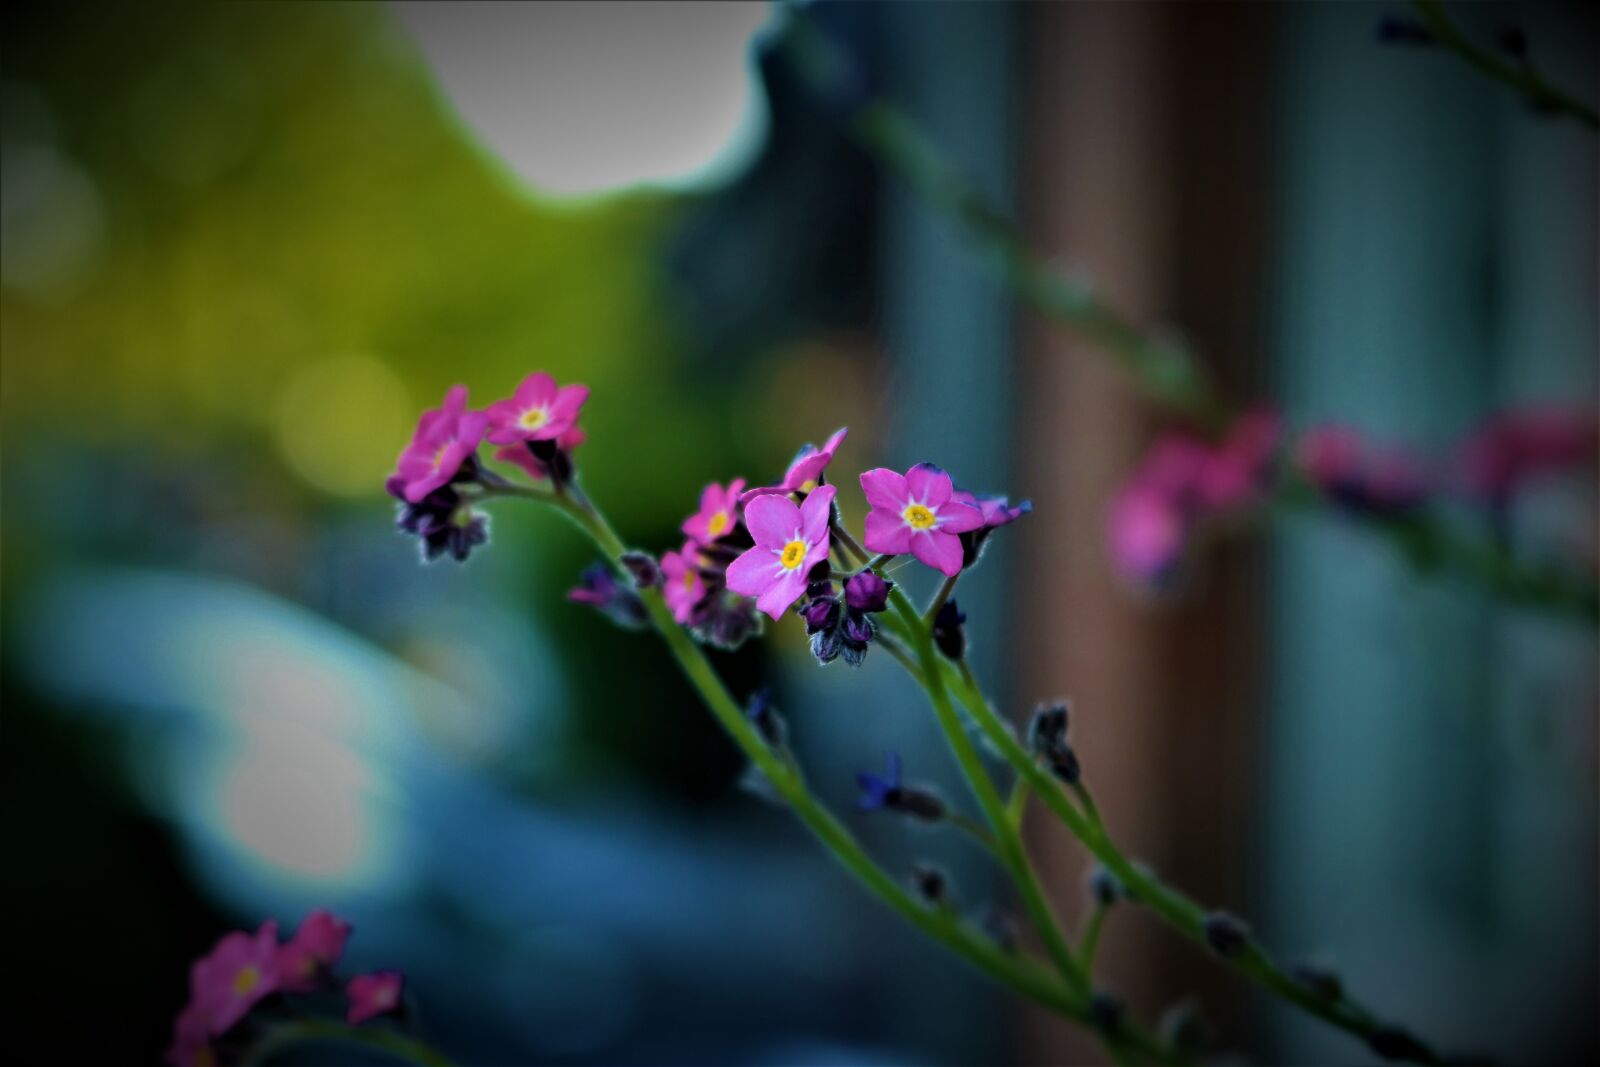 Canon EOS 750D (EOS Rebel T6i / EOS Kiss X8i) sample photo. Summer, garden, spring photography